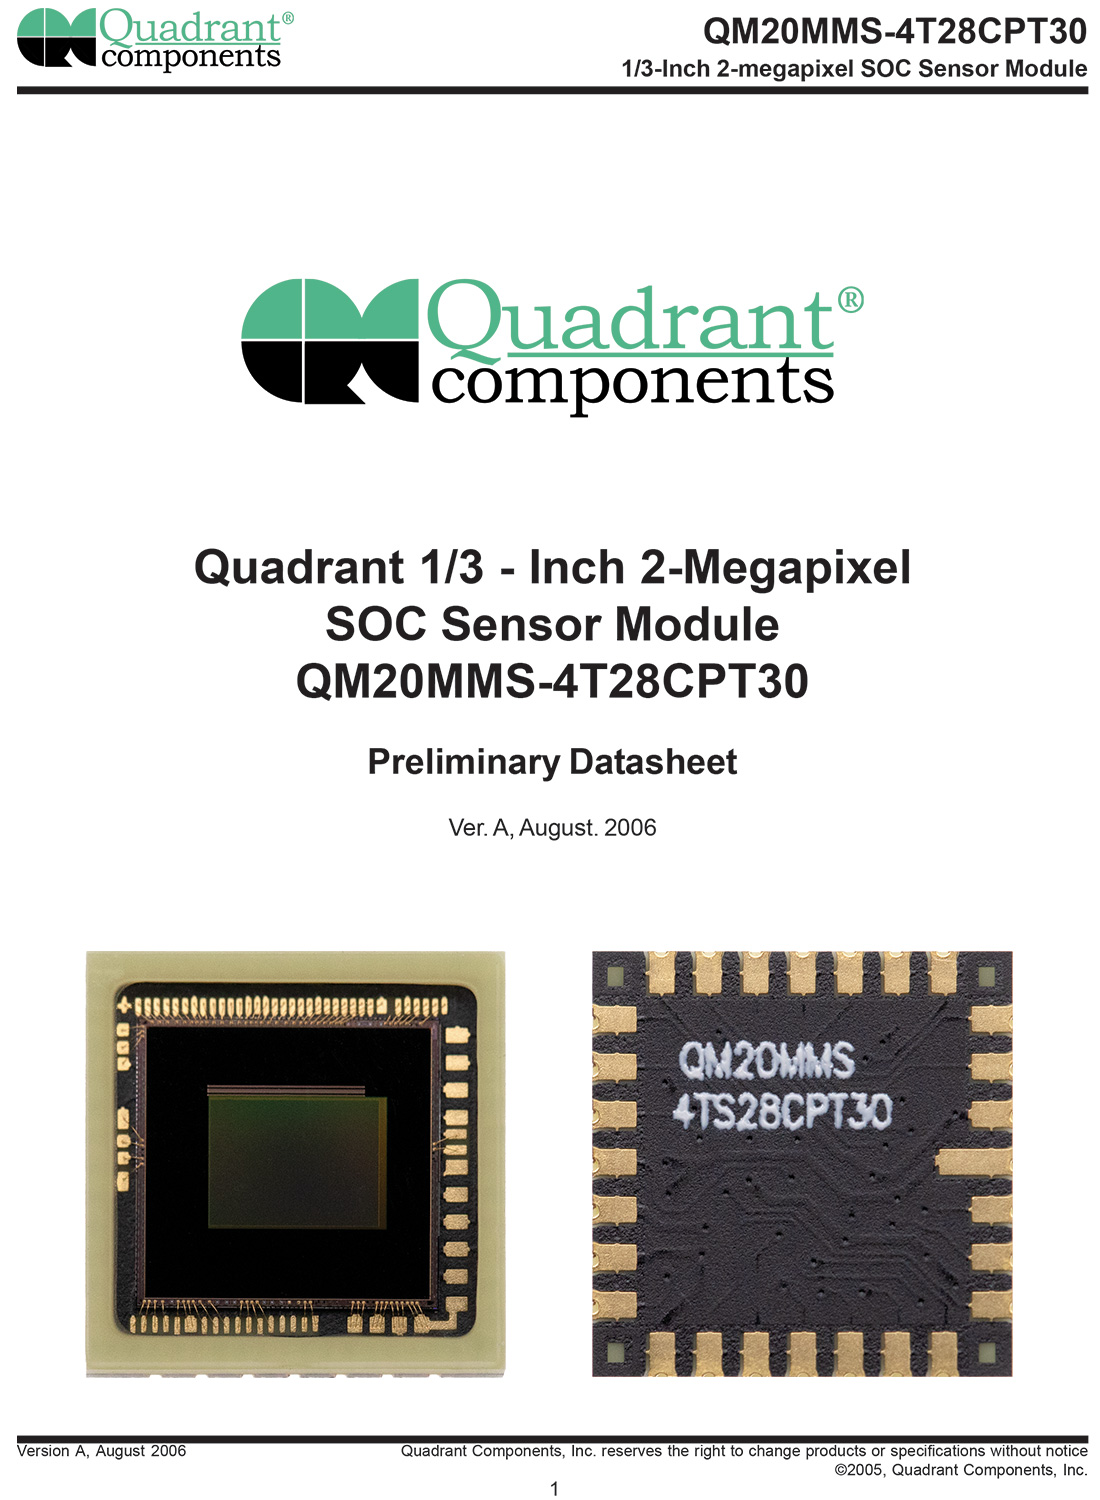 MT9D111,MI2010，QM20MMS-4T28CPT30，美光200万像素SoC, 美国扩展QUADRANT COMPONENTS, PLCC28封装工艺工业相机图像传感器,2MP CMOS SENSOR,1600x1200 cmos sensor,1/3-Inch 2-megapixel SOC, 片上系统 Sensor Module